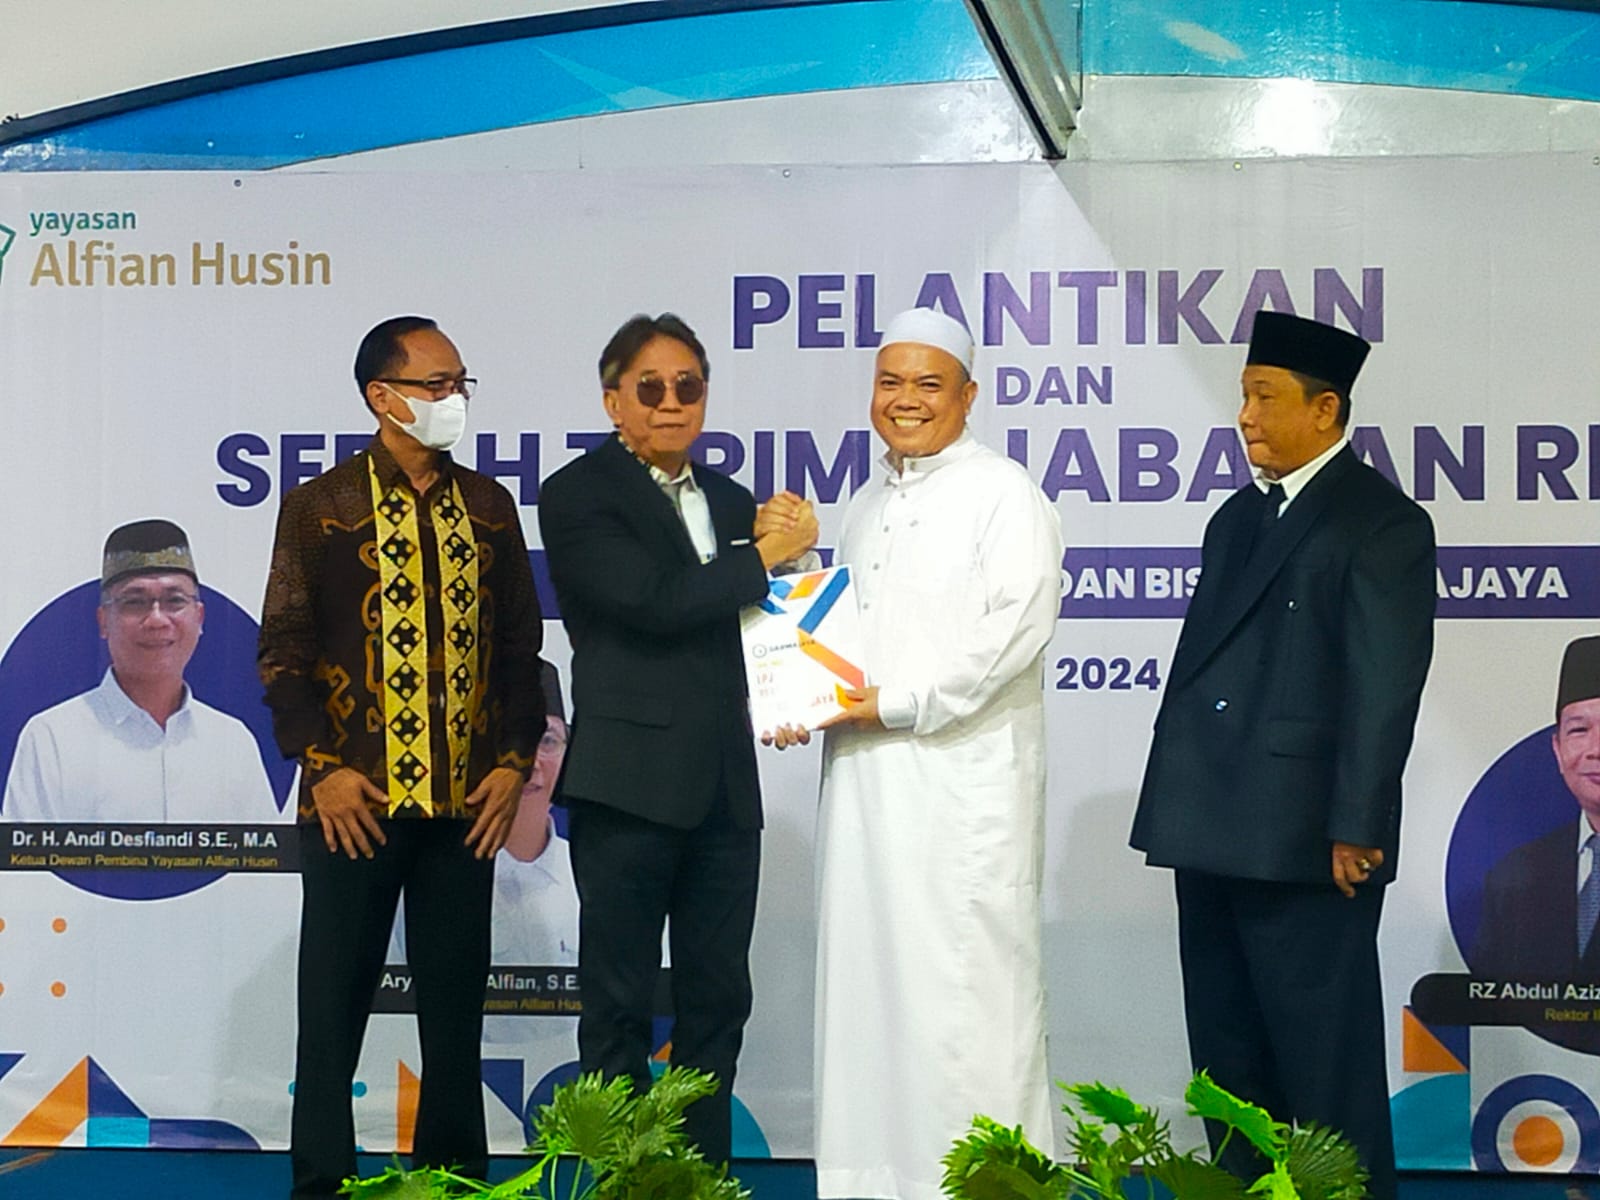 Selamat! R.Z.Abdul Aziz Resmi Jabat Rektor IIB Darmajaya